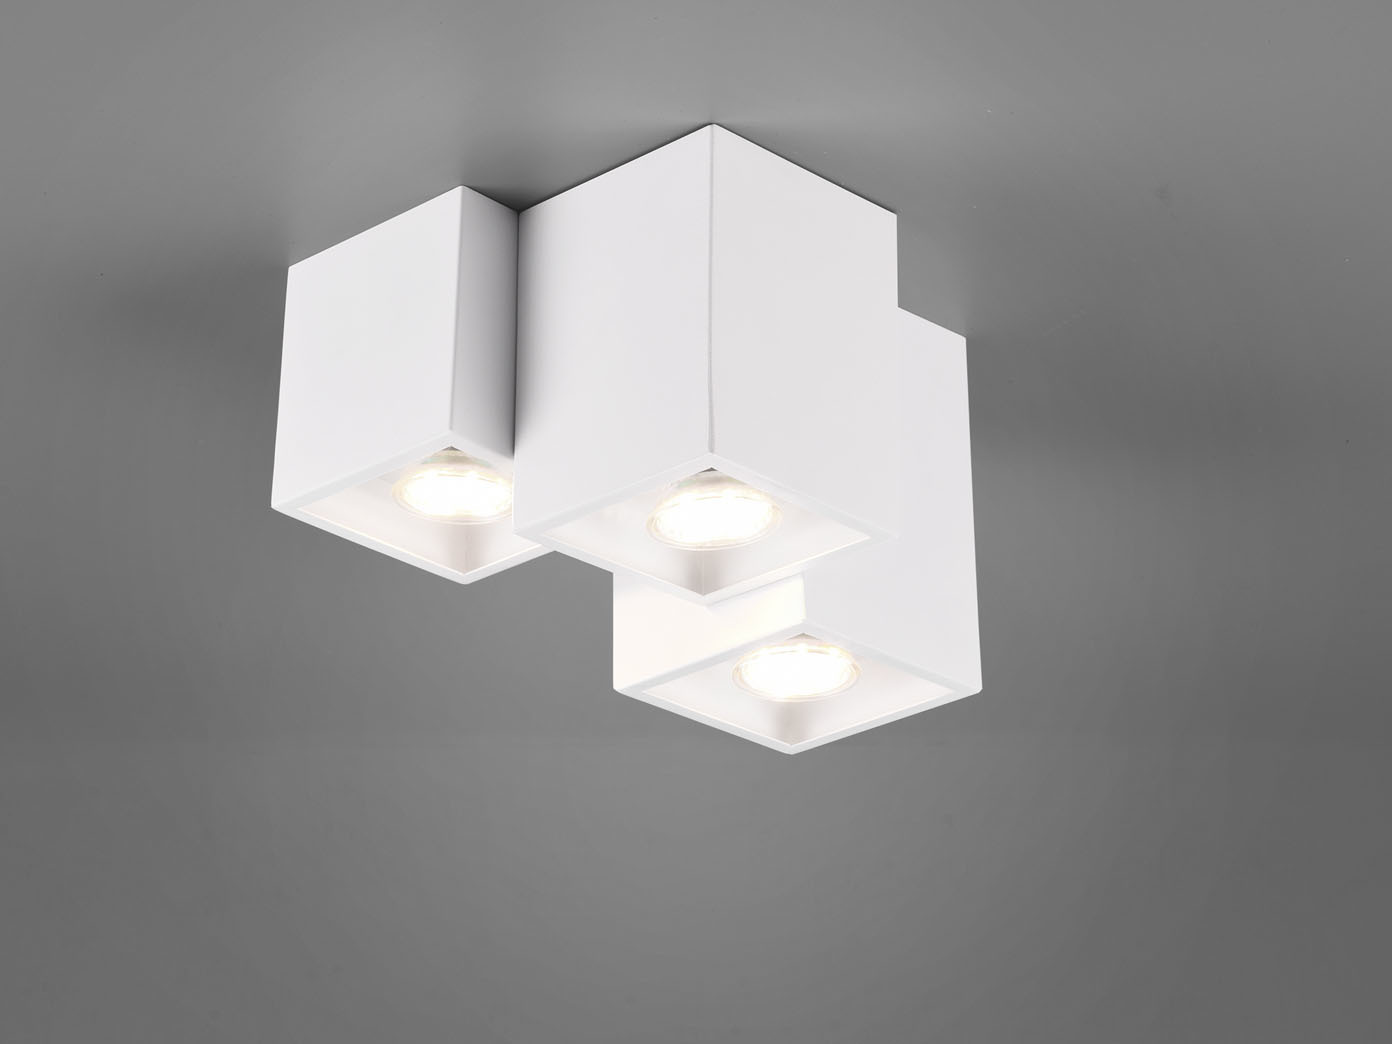 Deckenstrahler Design LED Deckenspot Deckenlampe Lampe Flur Spots Kopf beweglich 